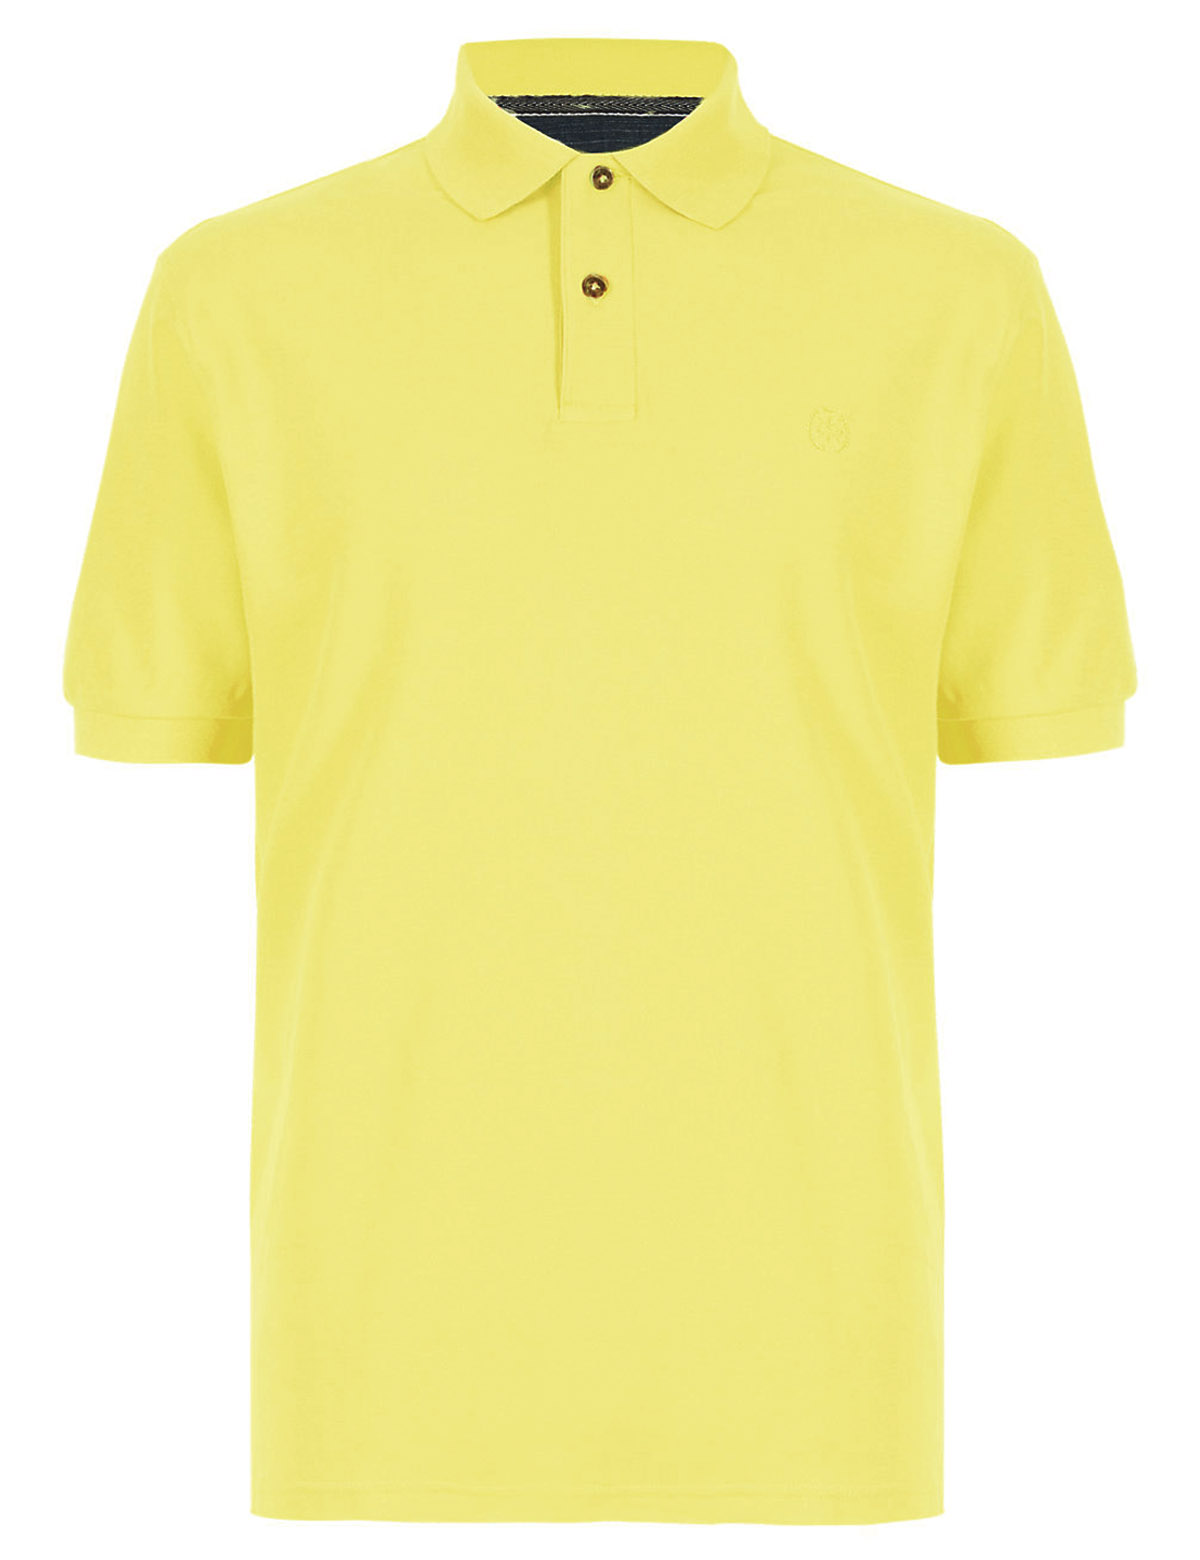 mens lemon polo shirt